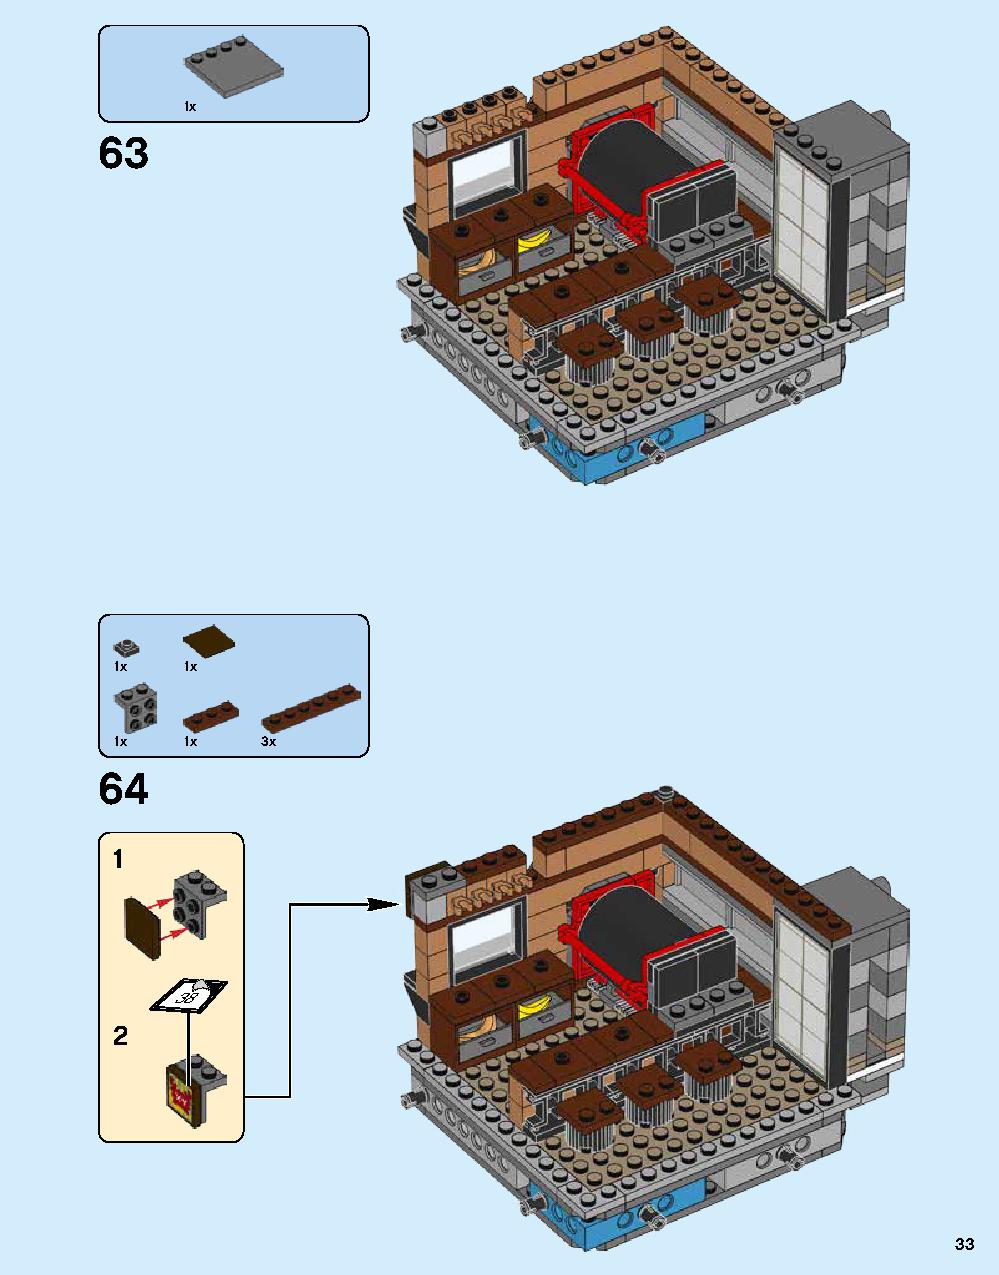 ニンジャゴー シティ 70620 レゴの商品情報 レゴの説明書・組立方法 33 page